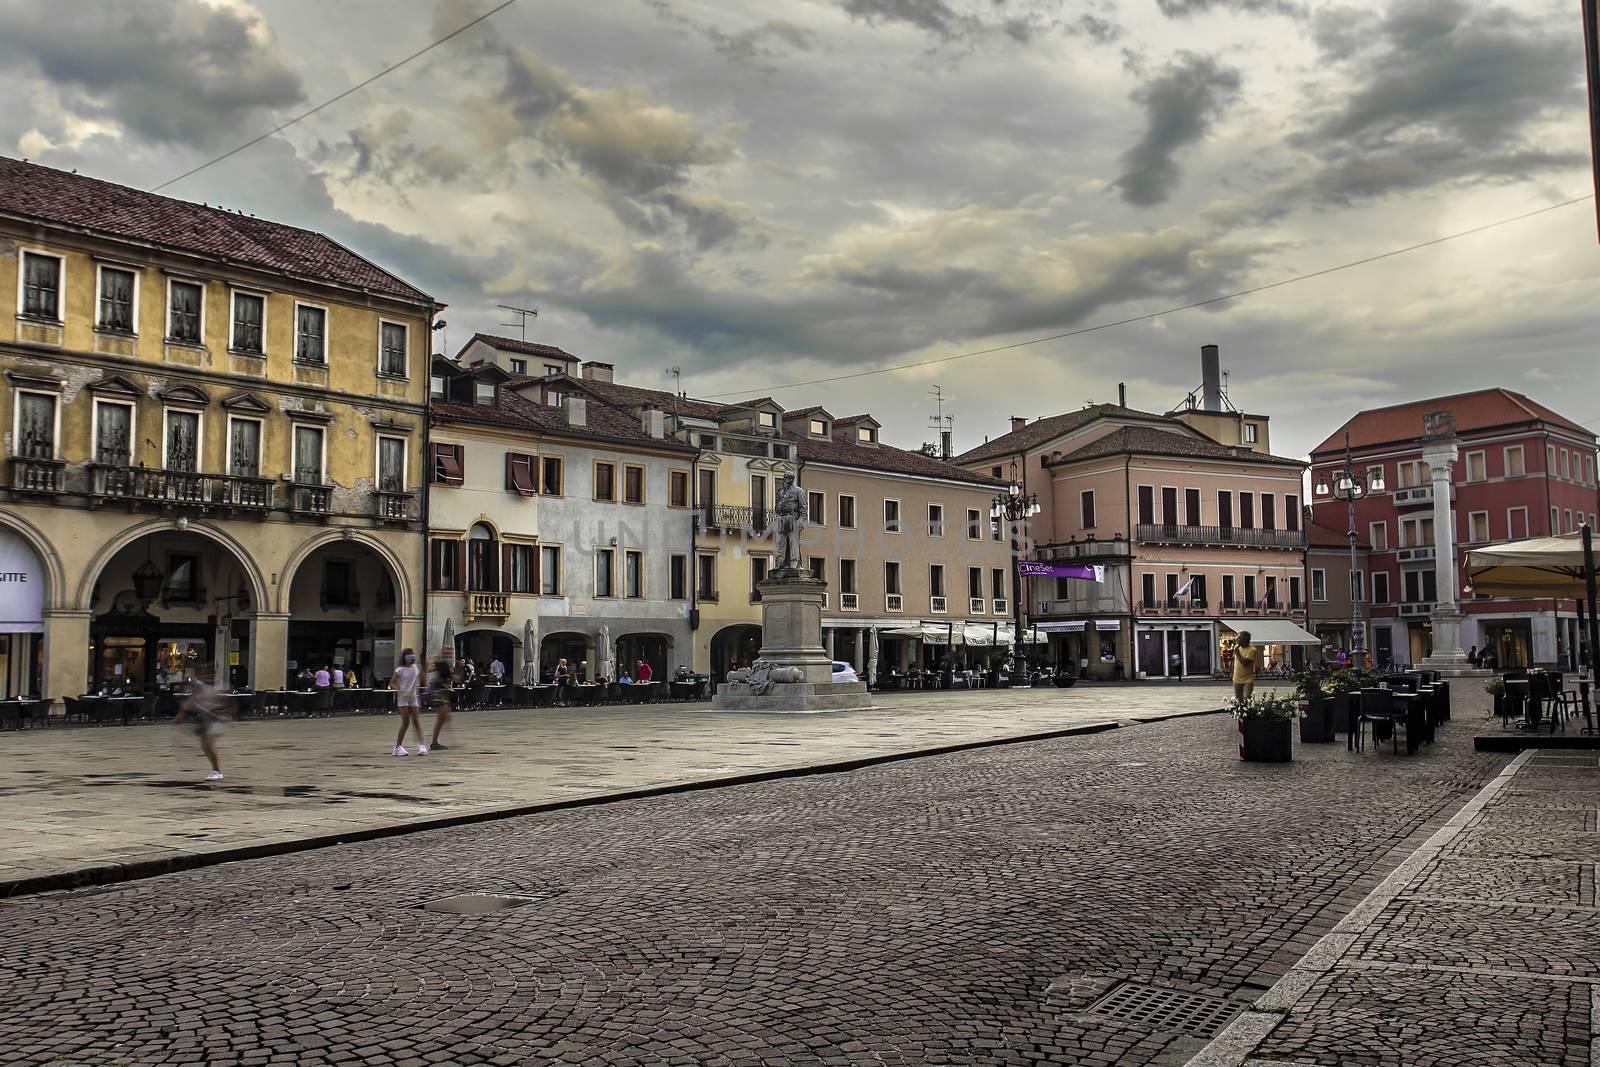 ROVIGO, ITALY 17 JULY 2020: Piazza Vittorio Emanuele in Rovigo, the most important square in the city